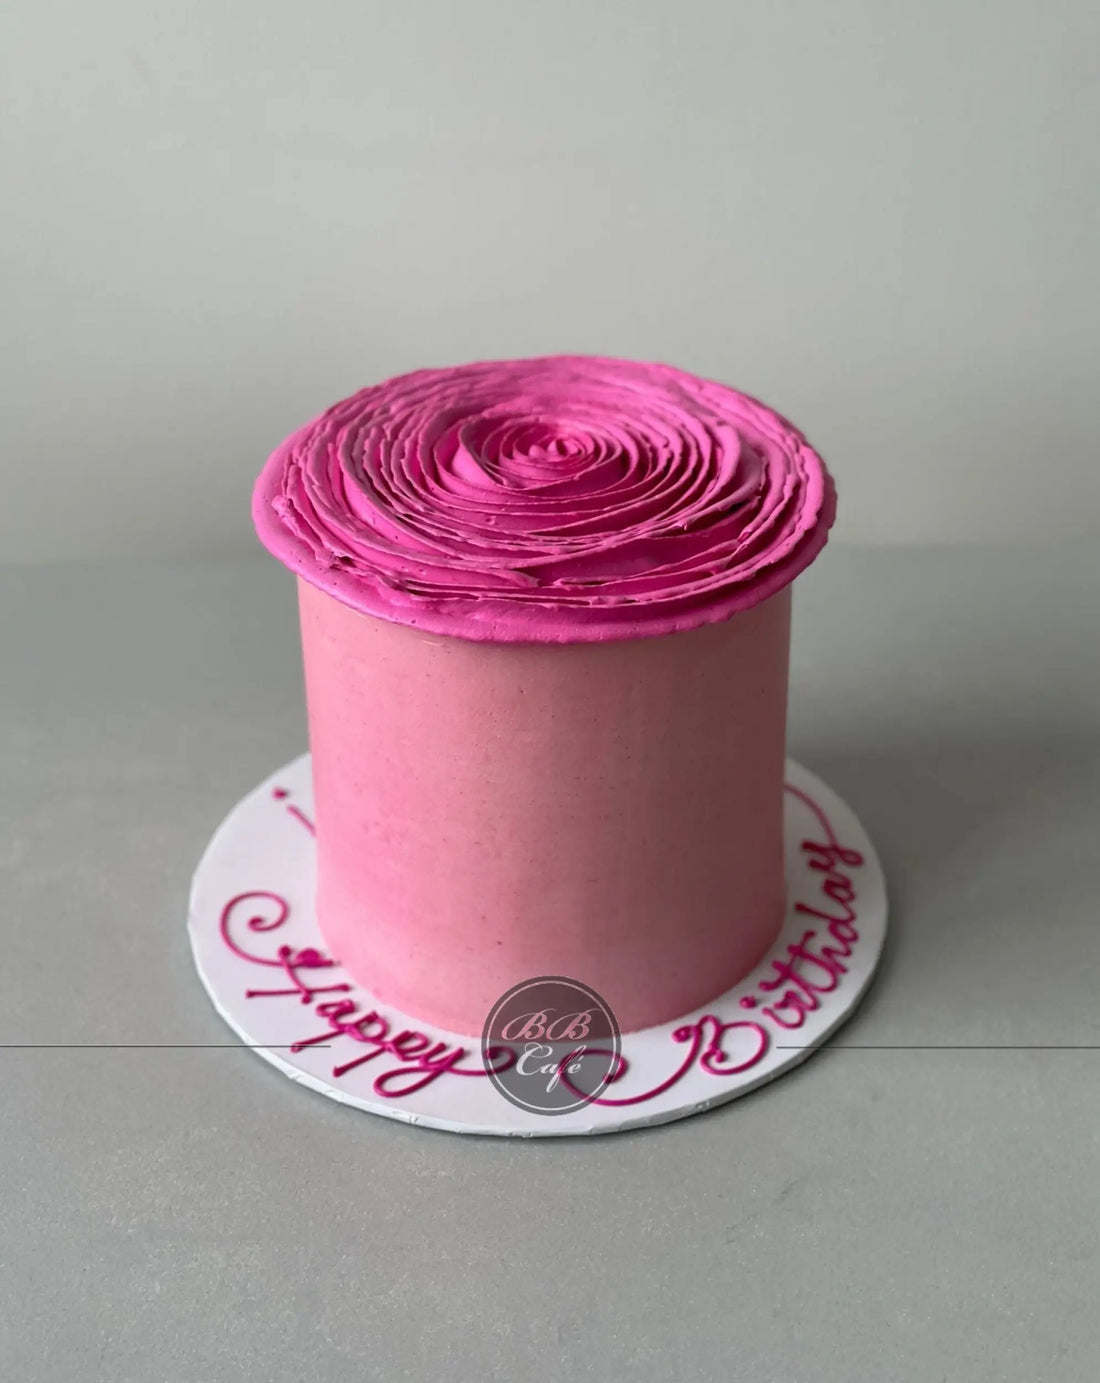 Hand piped ruffled rose on buttercream - custom cake